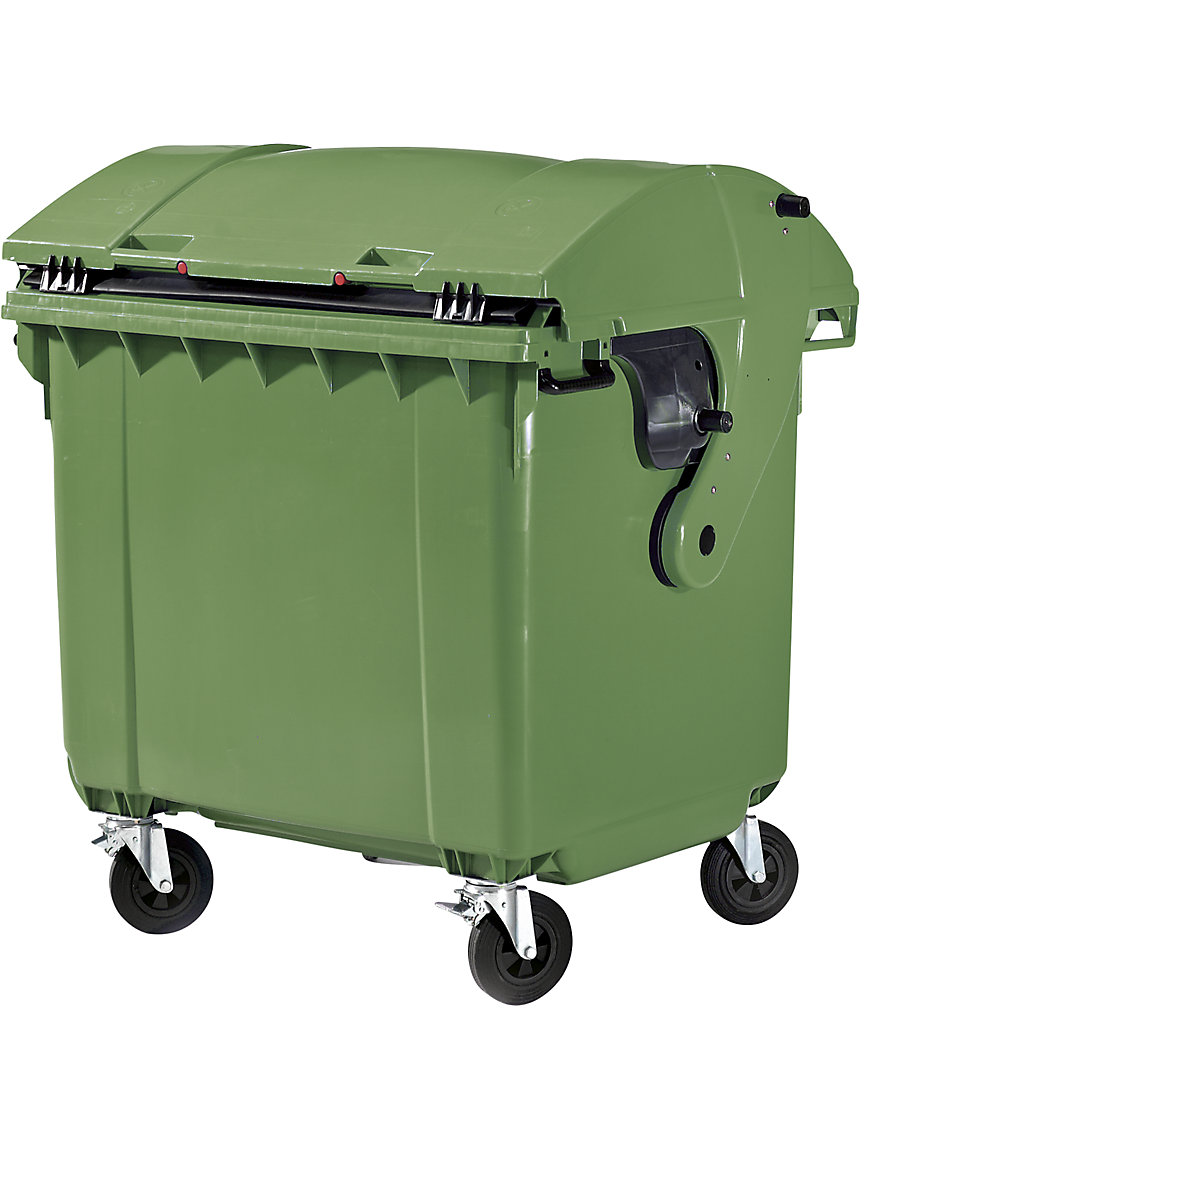 Conteneur à ordures en plastique conforme DIN EN 840, capacité 1100 l, l x h x p 1360 x 1465 x 1100 mm, couvercle coulissant, sécurité enfants, coloris vert